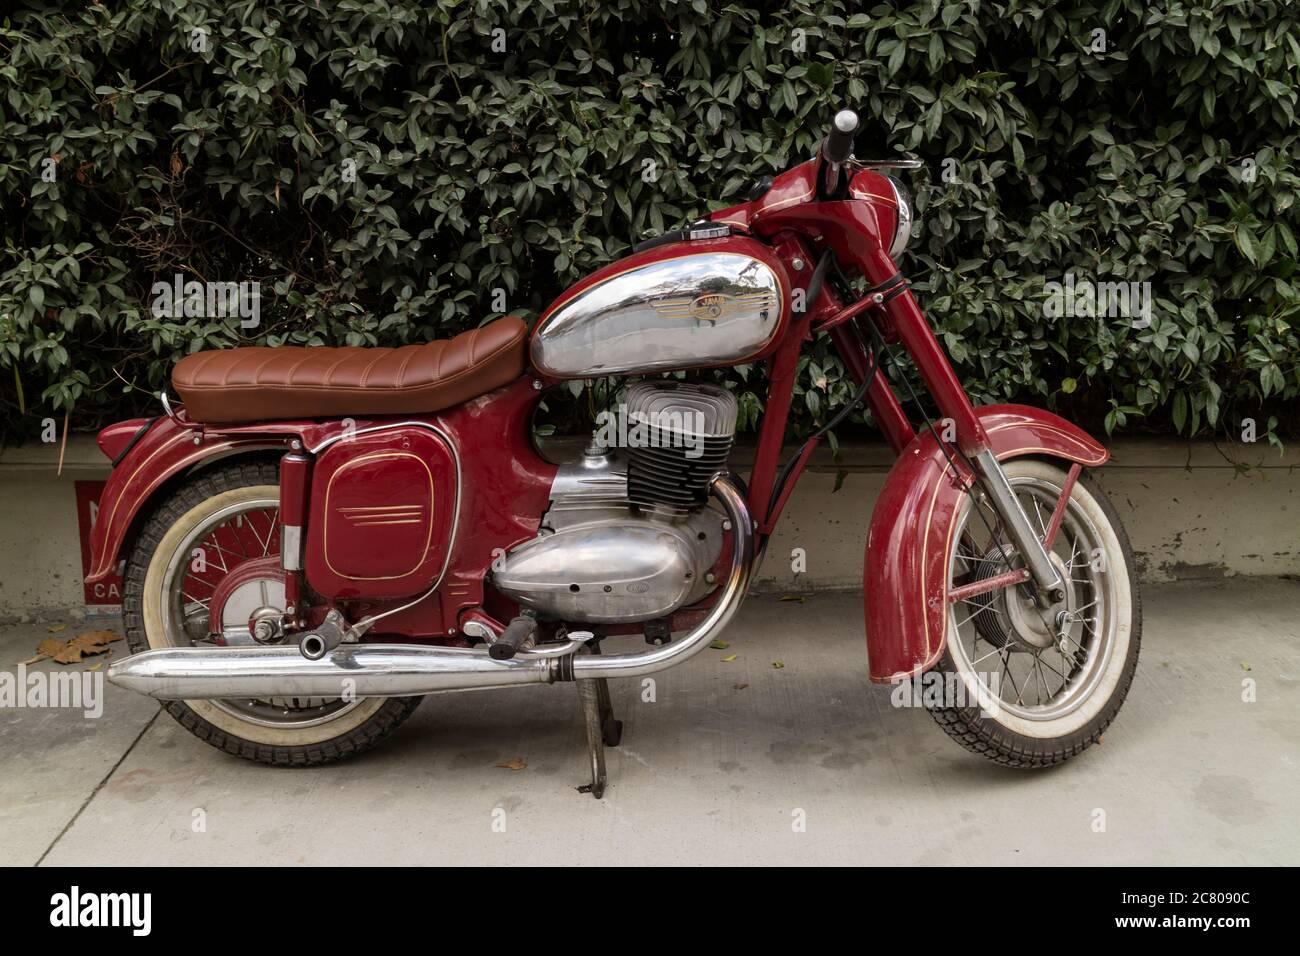 1968 Vintage Jawa Motorcycle Stock Photo